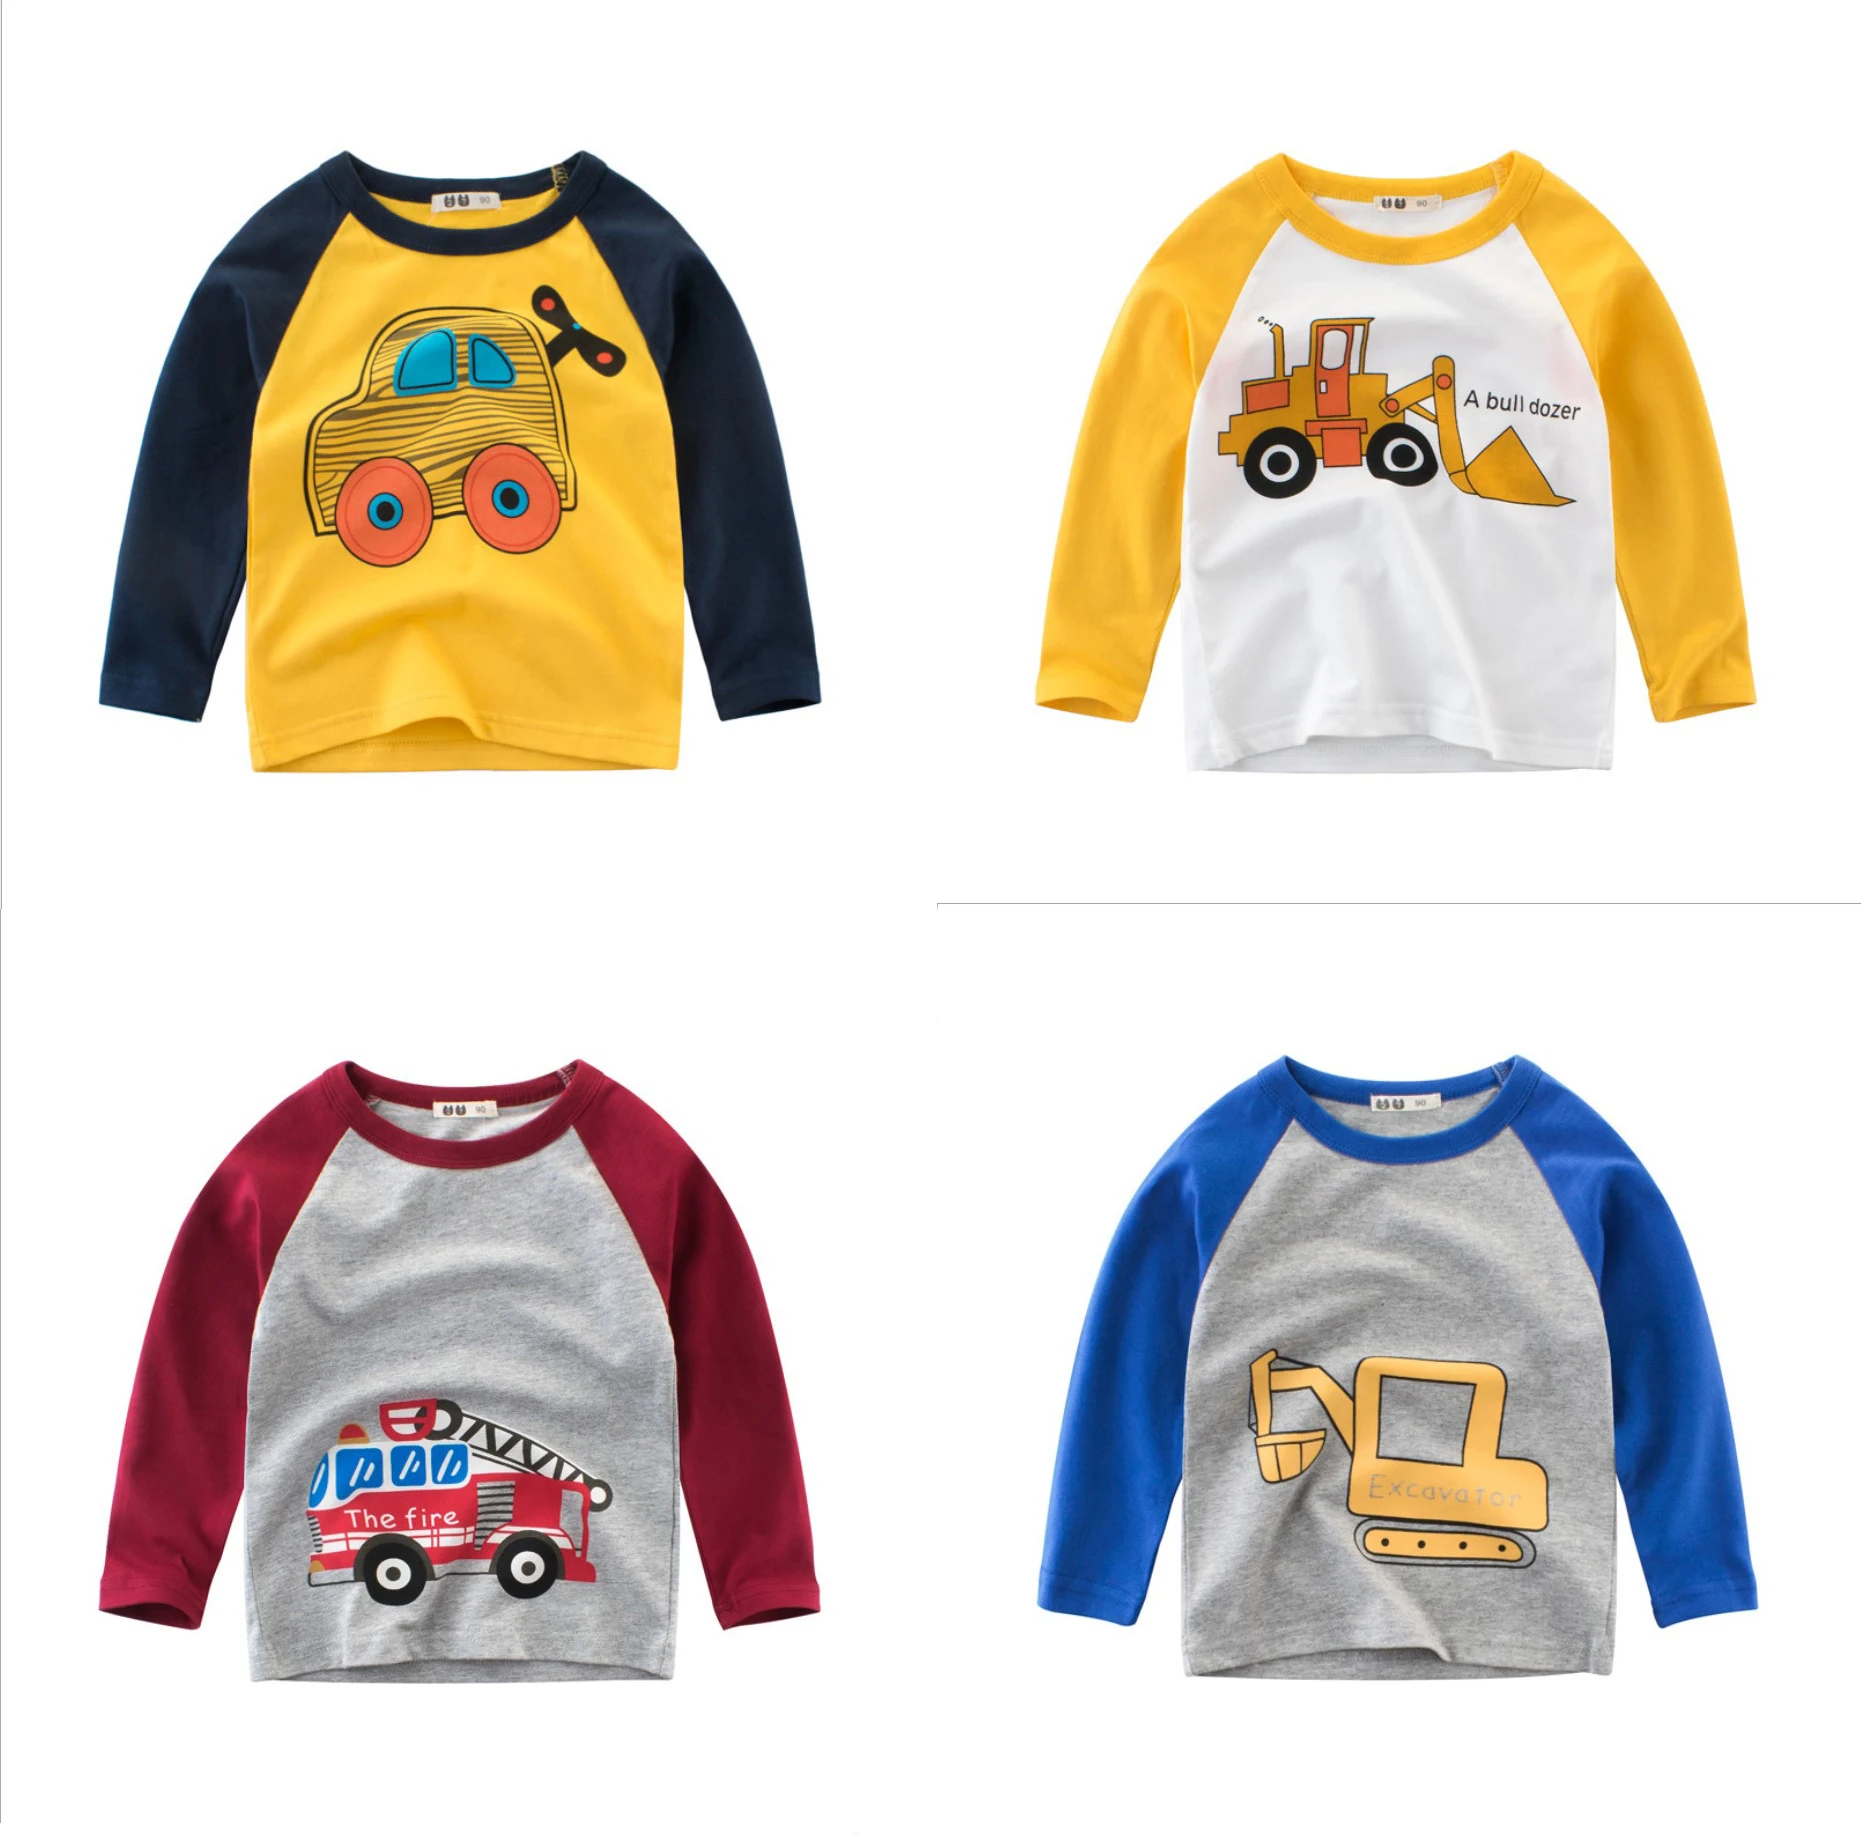 

7plus1 2020 новые детские хлопковые футболки с длинным рукавом с принтом автомобиля для мальчиков 3T 4T 5T 6T 7T 8T детская спортивная одежда